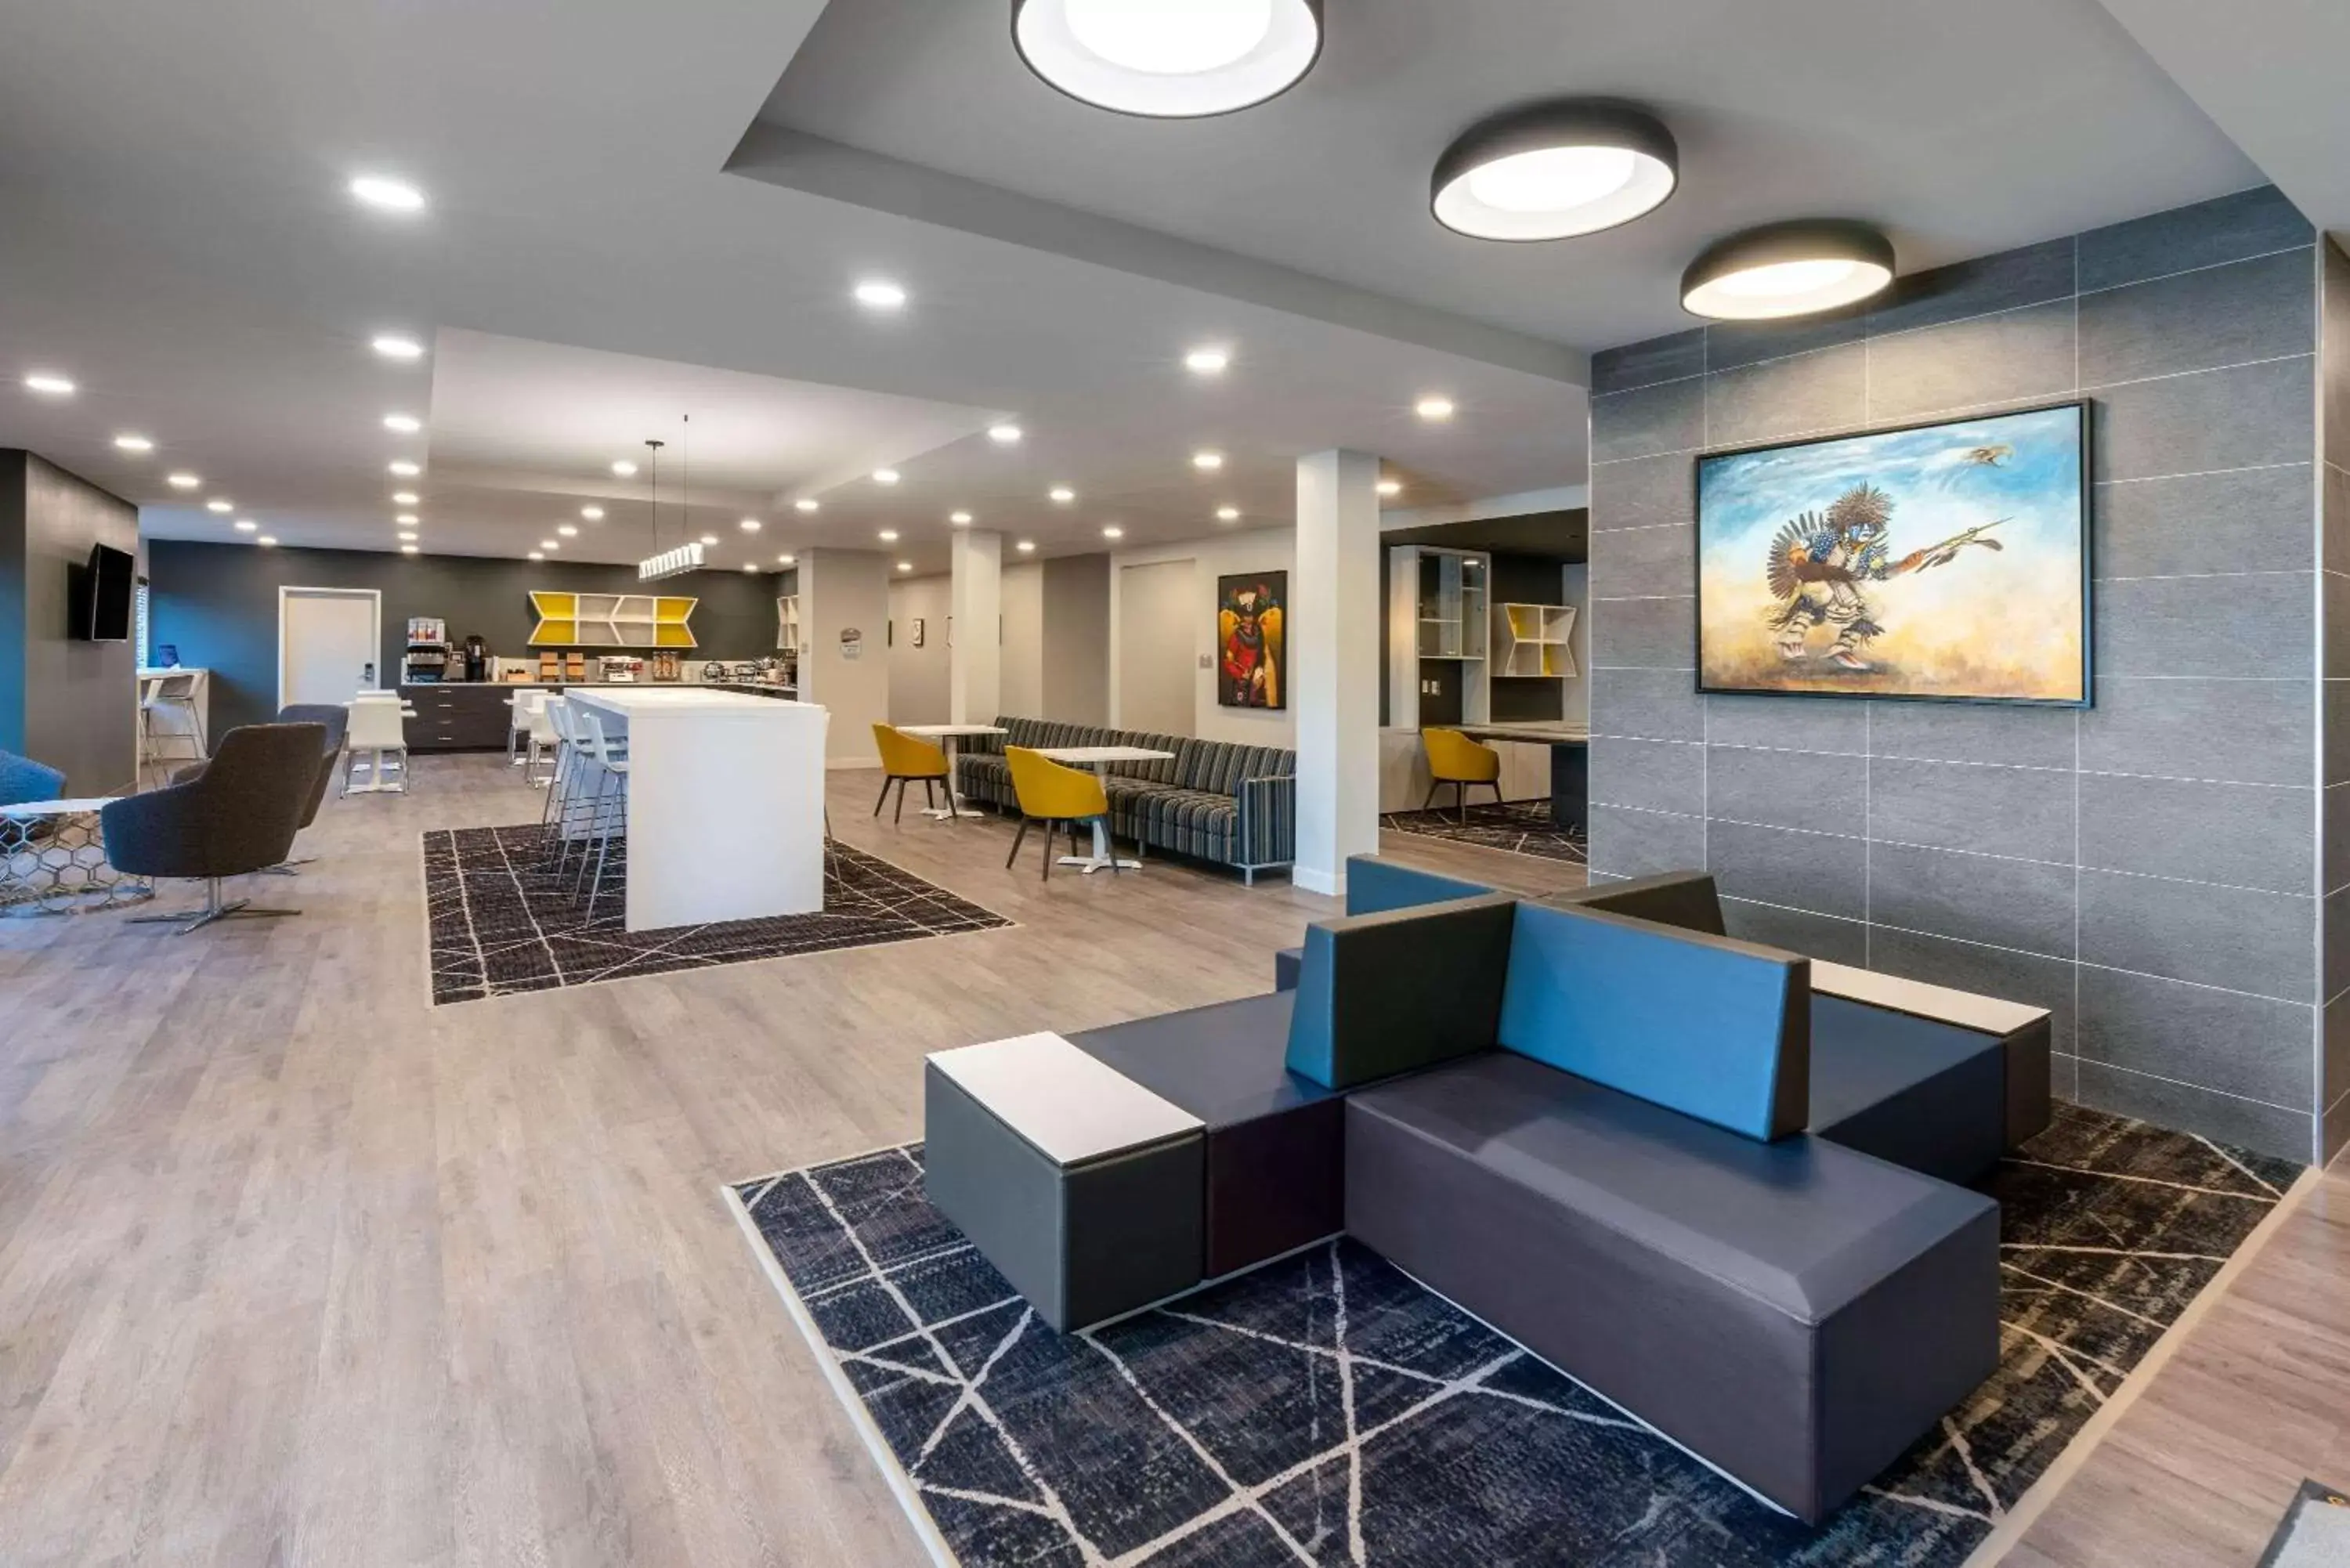 Lobby or reception, Lobby/Reception in Microtel Inn & Suites by Wyndham Portage La Prairie